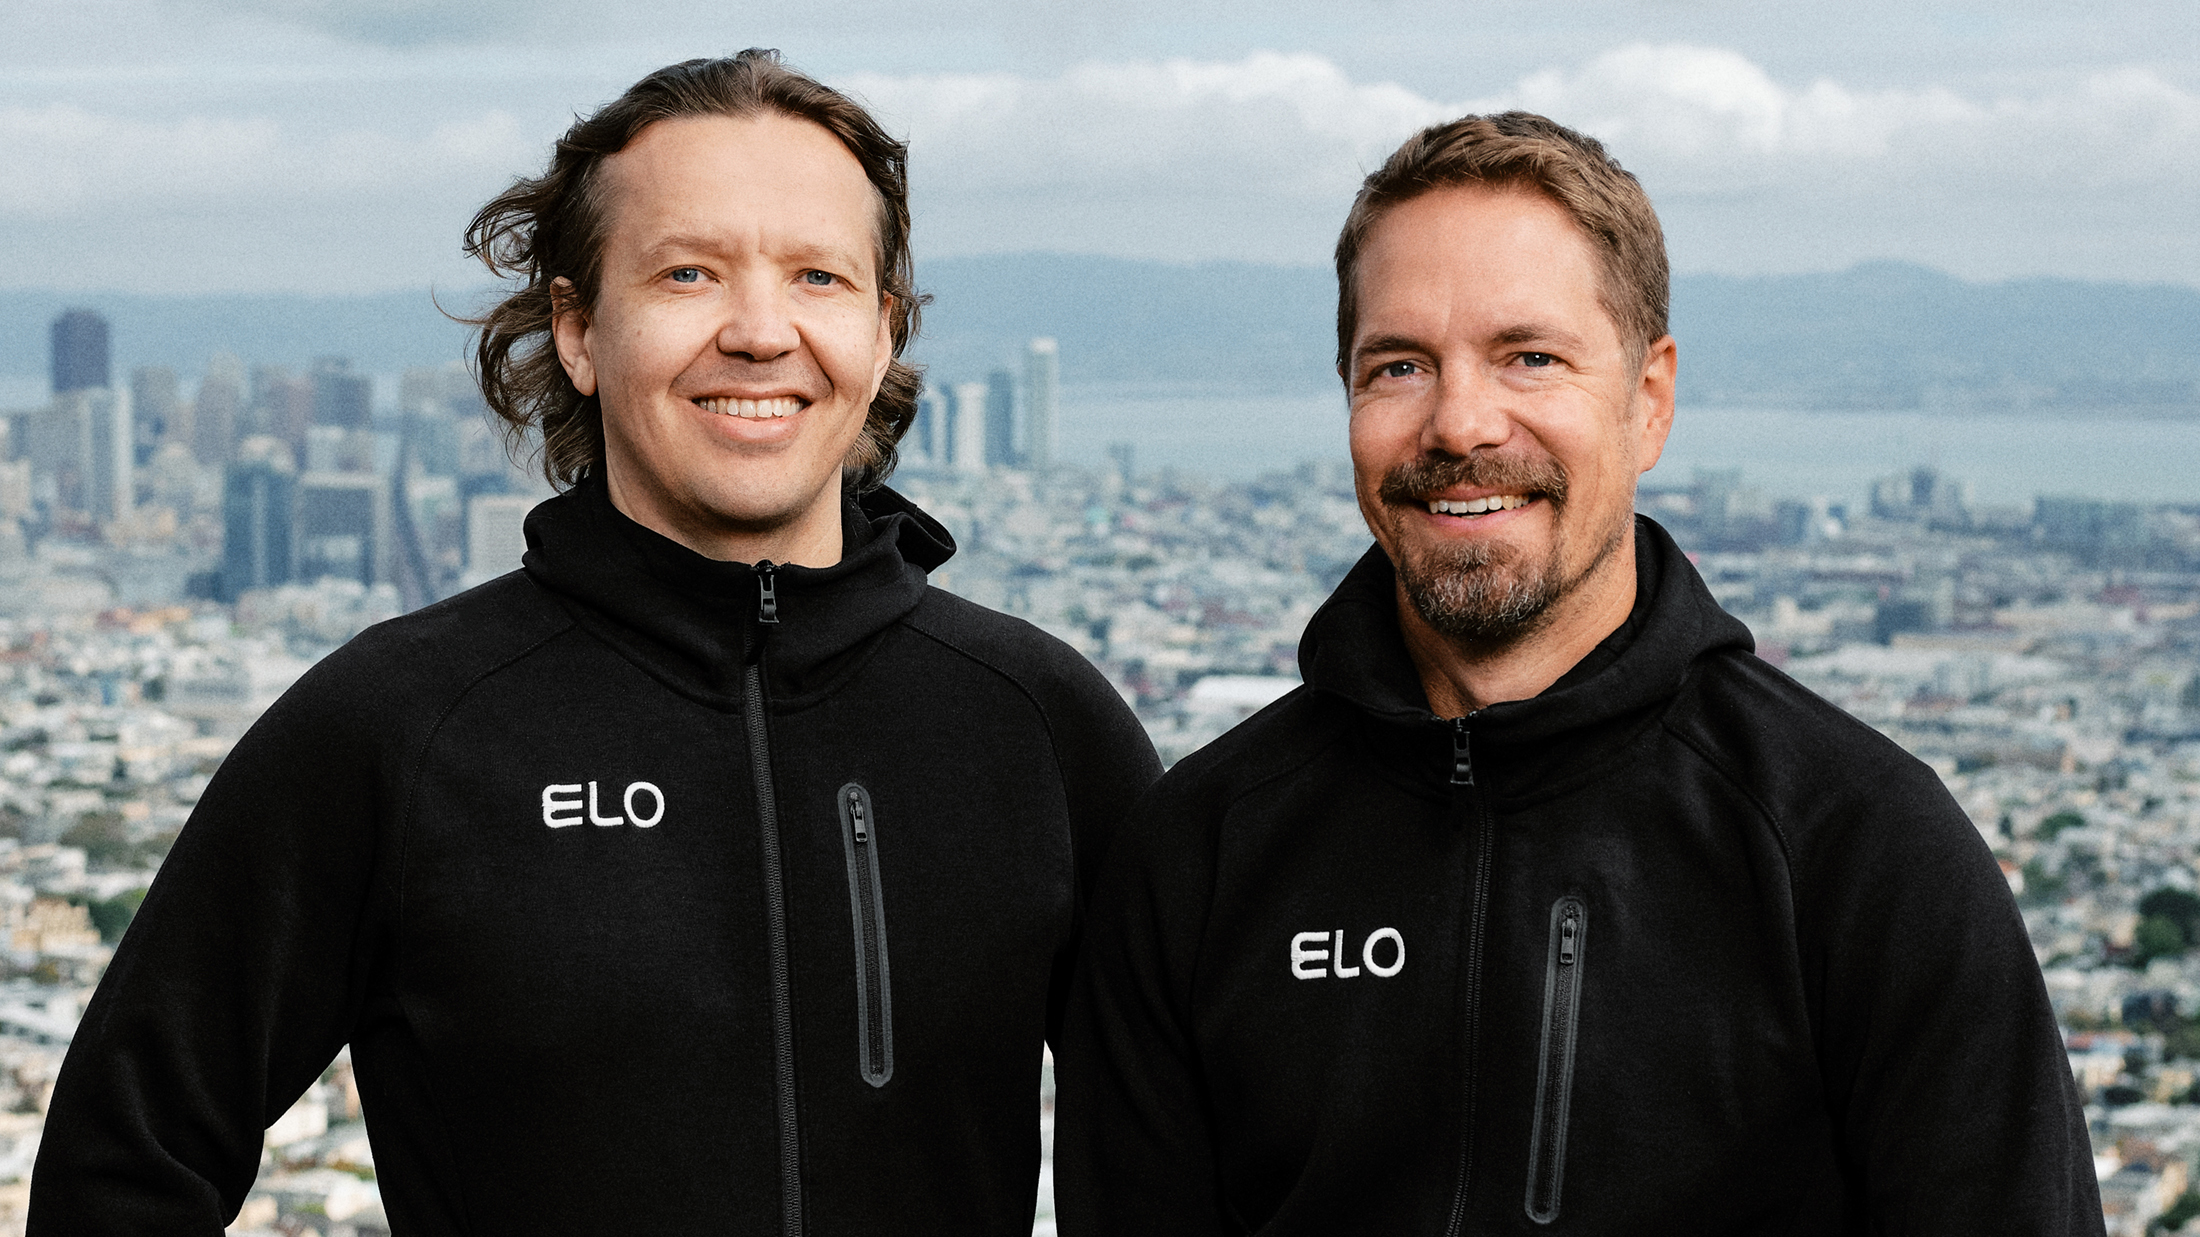 Elo founders Ari and Tapio